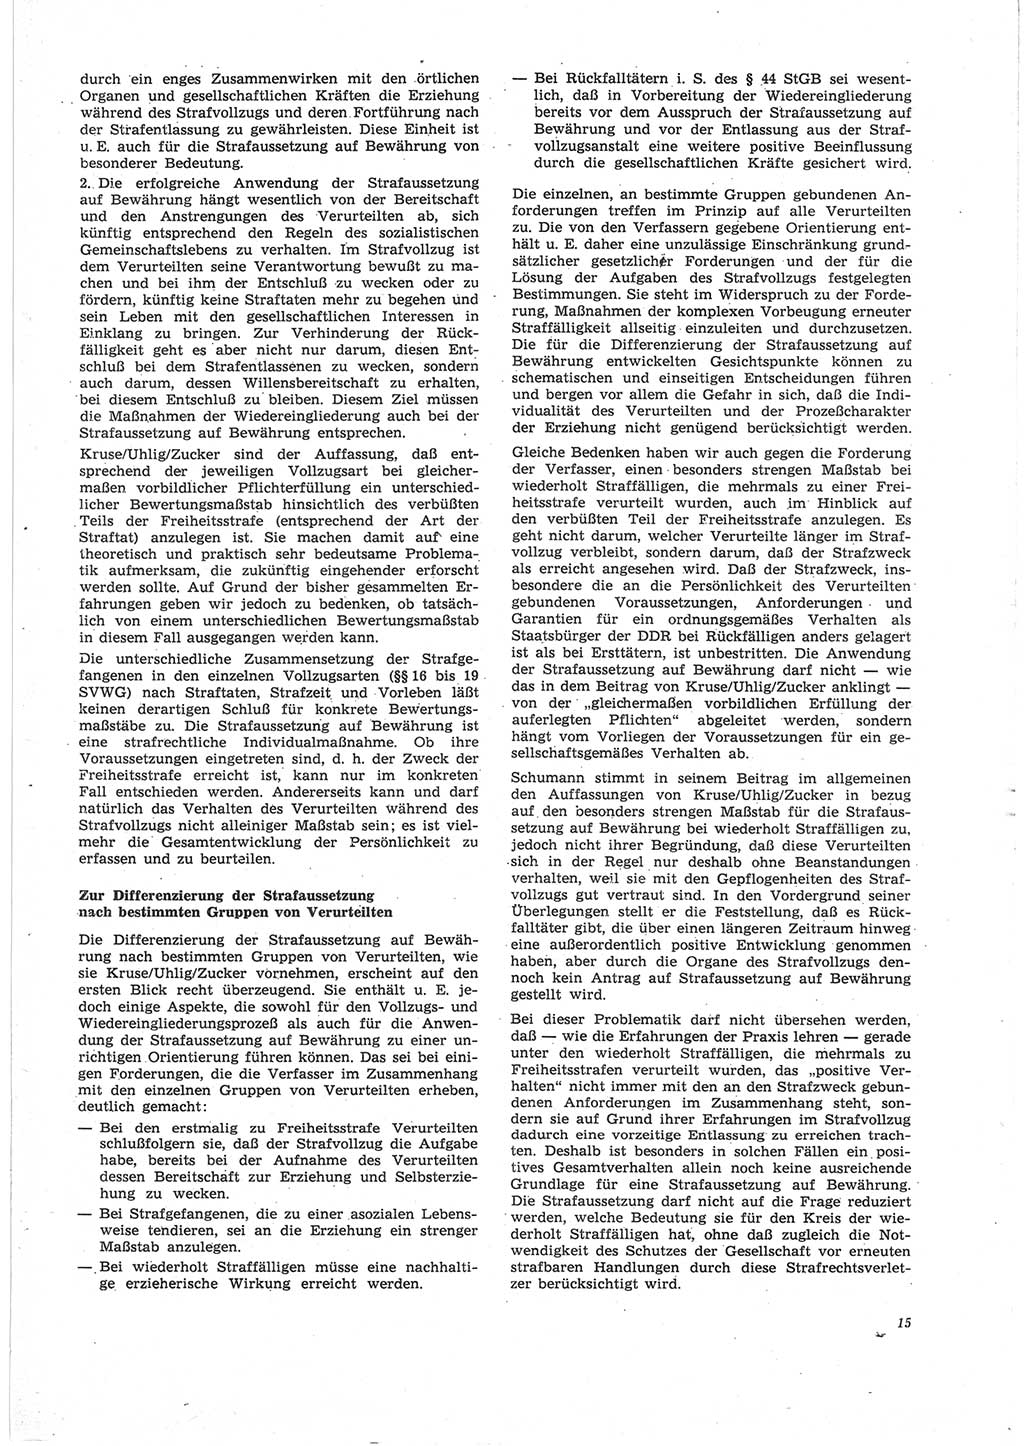 Neue Justiz (NJ), Zeitschrift für Recht und Rechtswissenschaft [Deutsche Demokratische Republik (DDR)], 25. Jahrgang 1971, Seite 15 (NJ DDR 1971, S. 15)